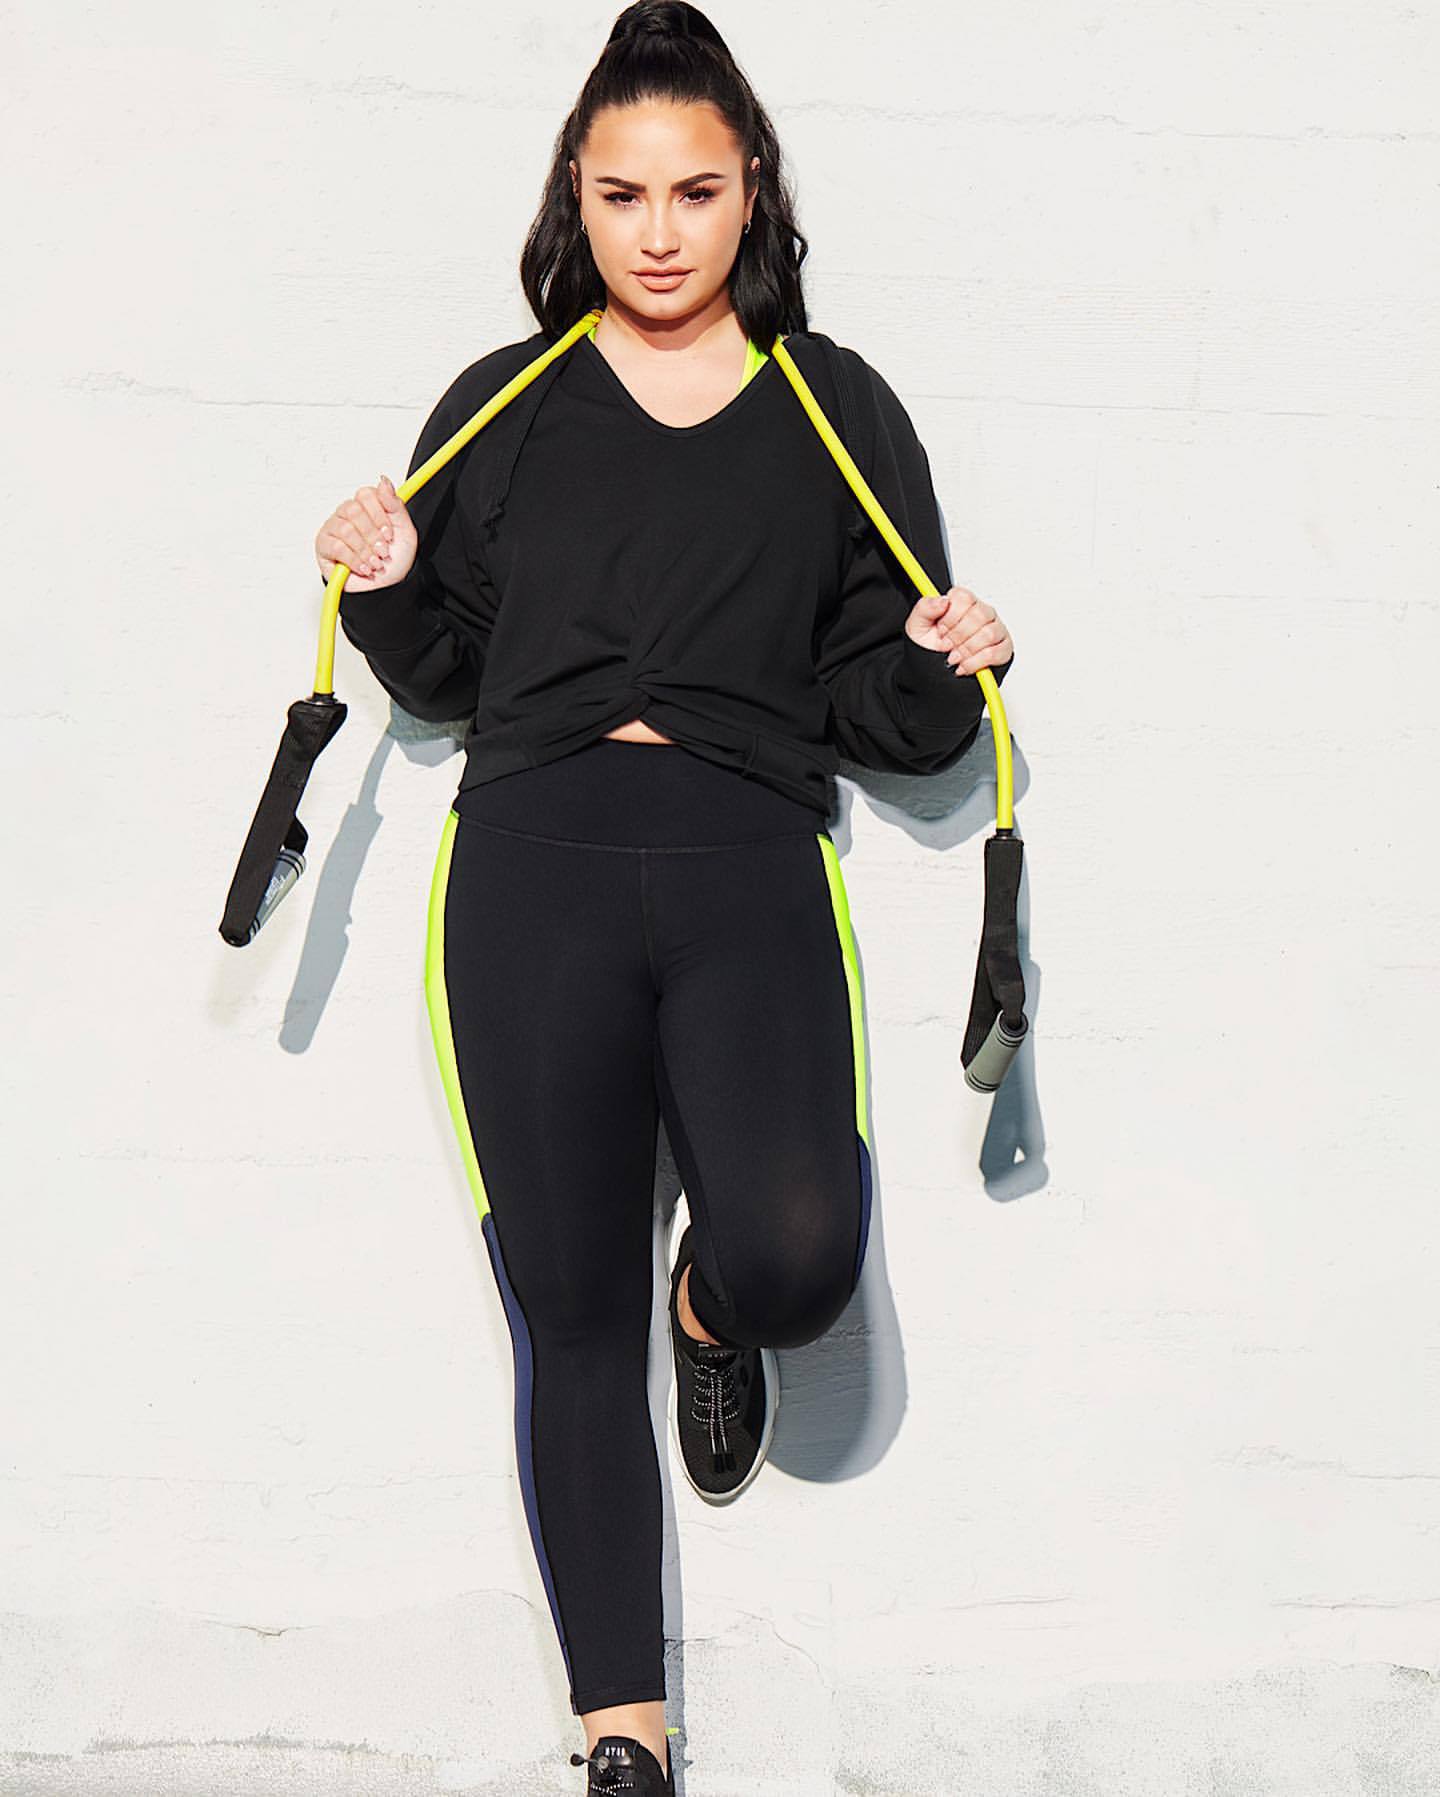 Demi Lovato Fabolous Photoshoot For Fabletics Line Spring Summer 2020 0027